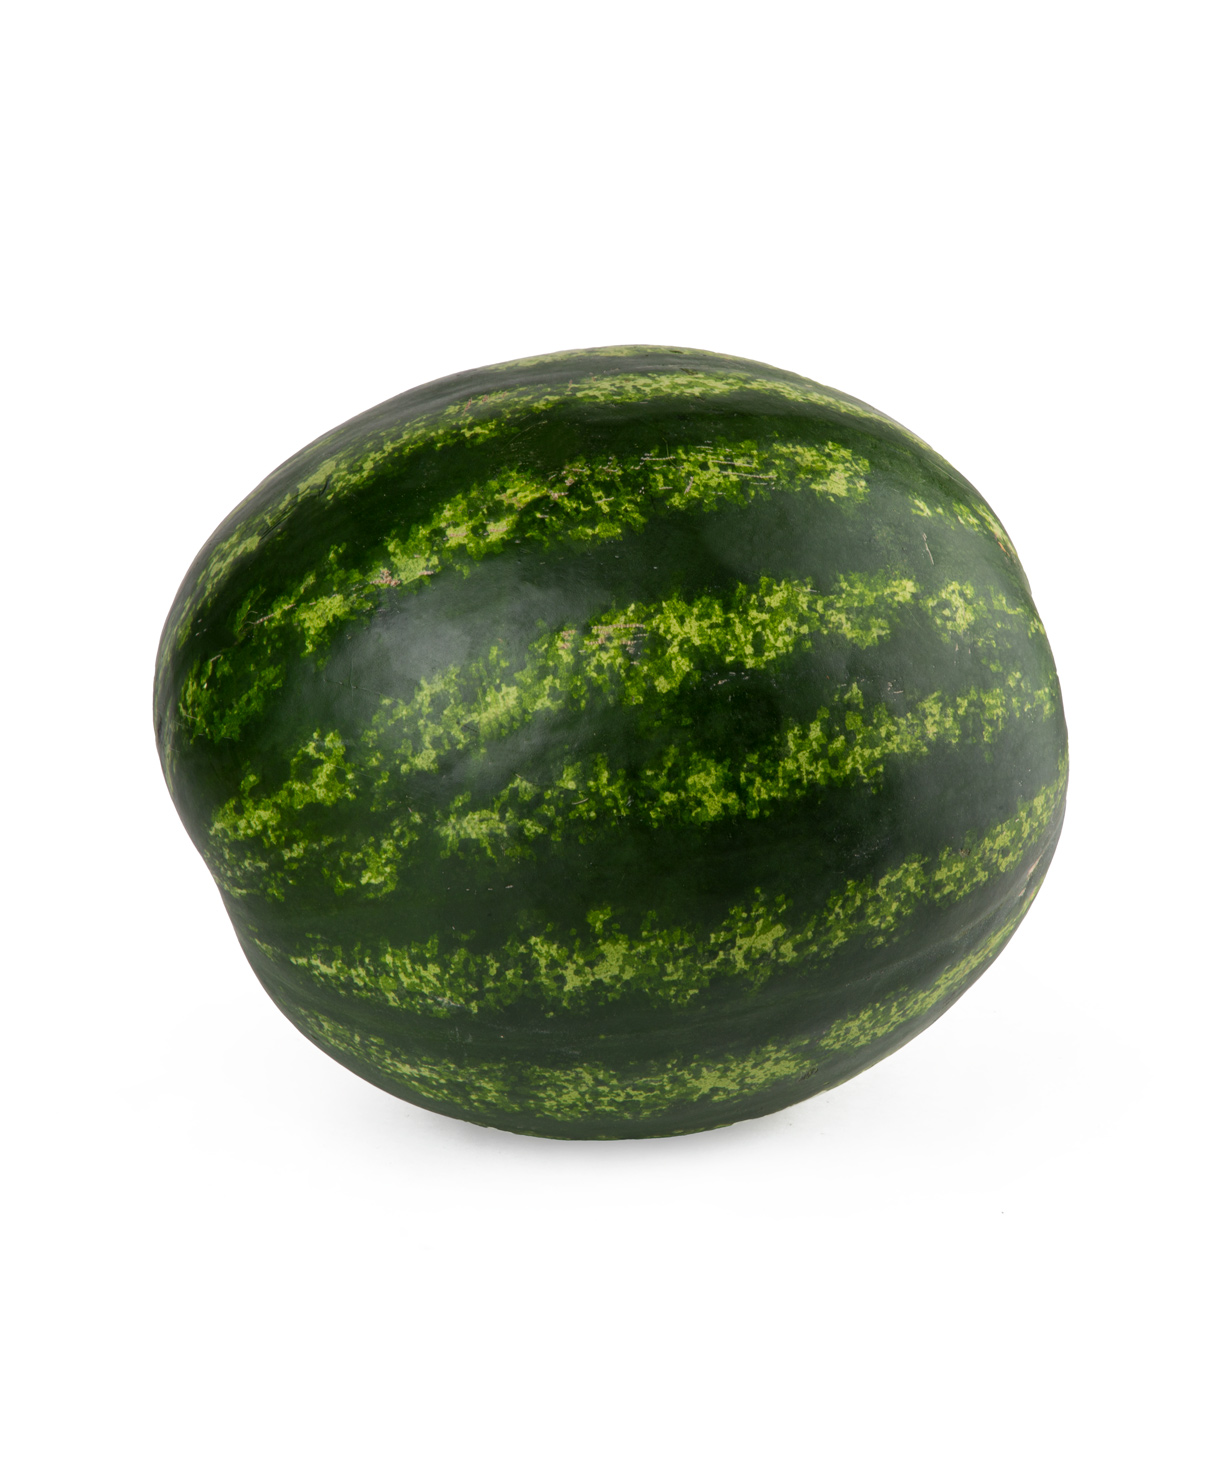 Watermelon 1 pcs 8-10 kg